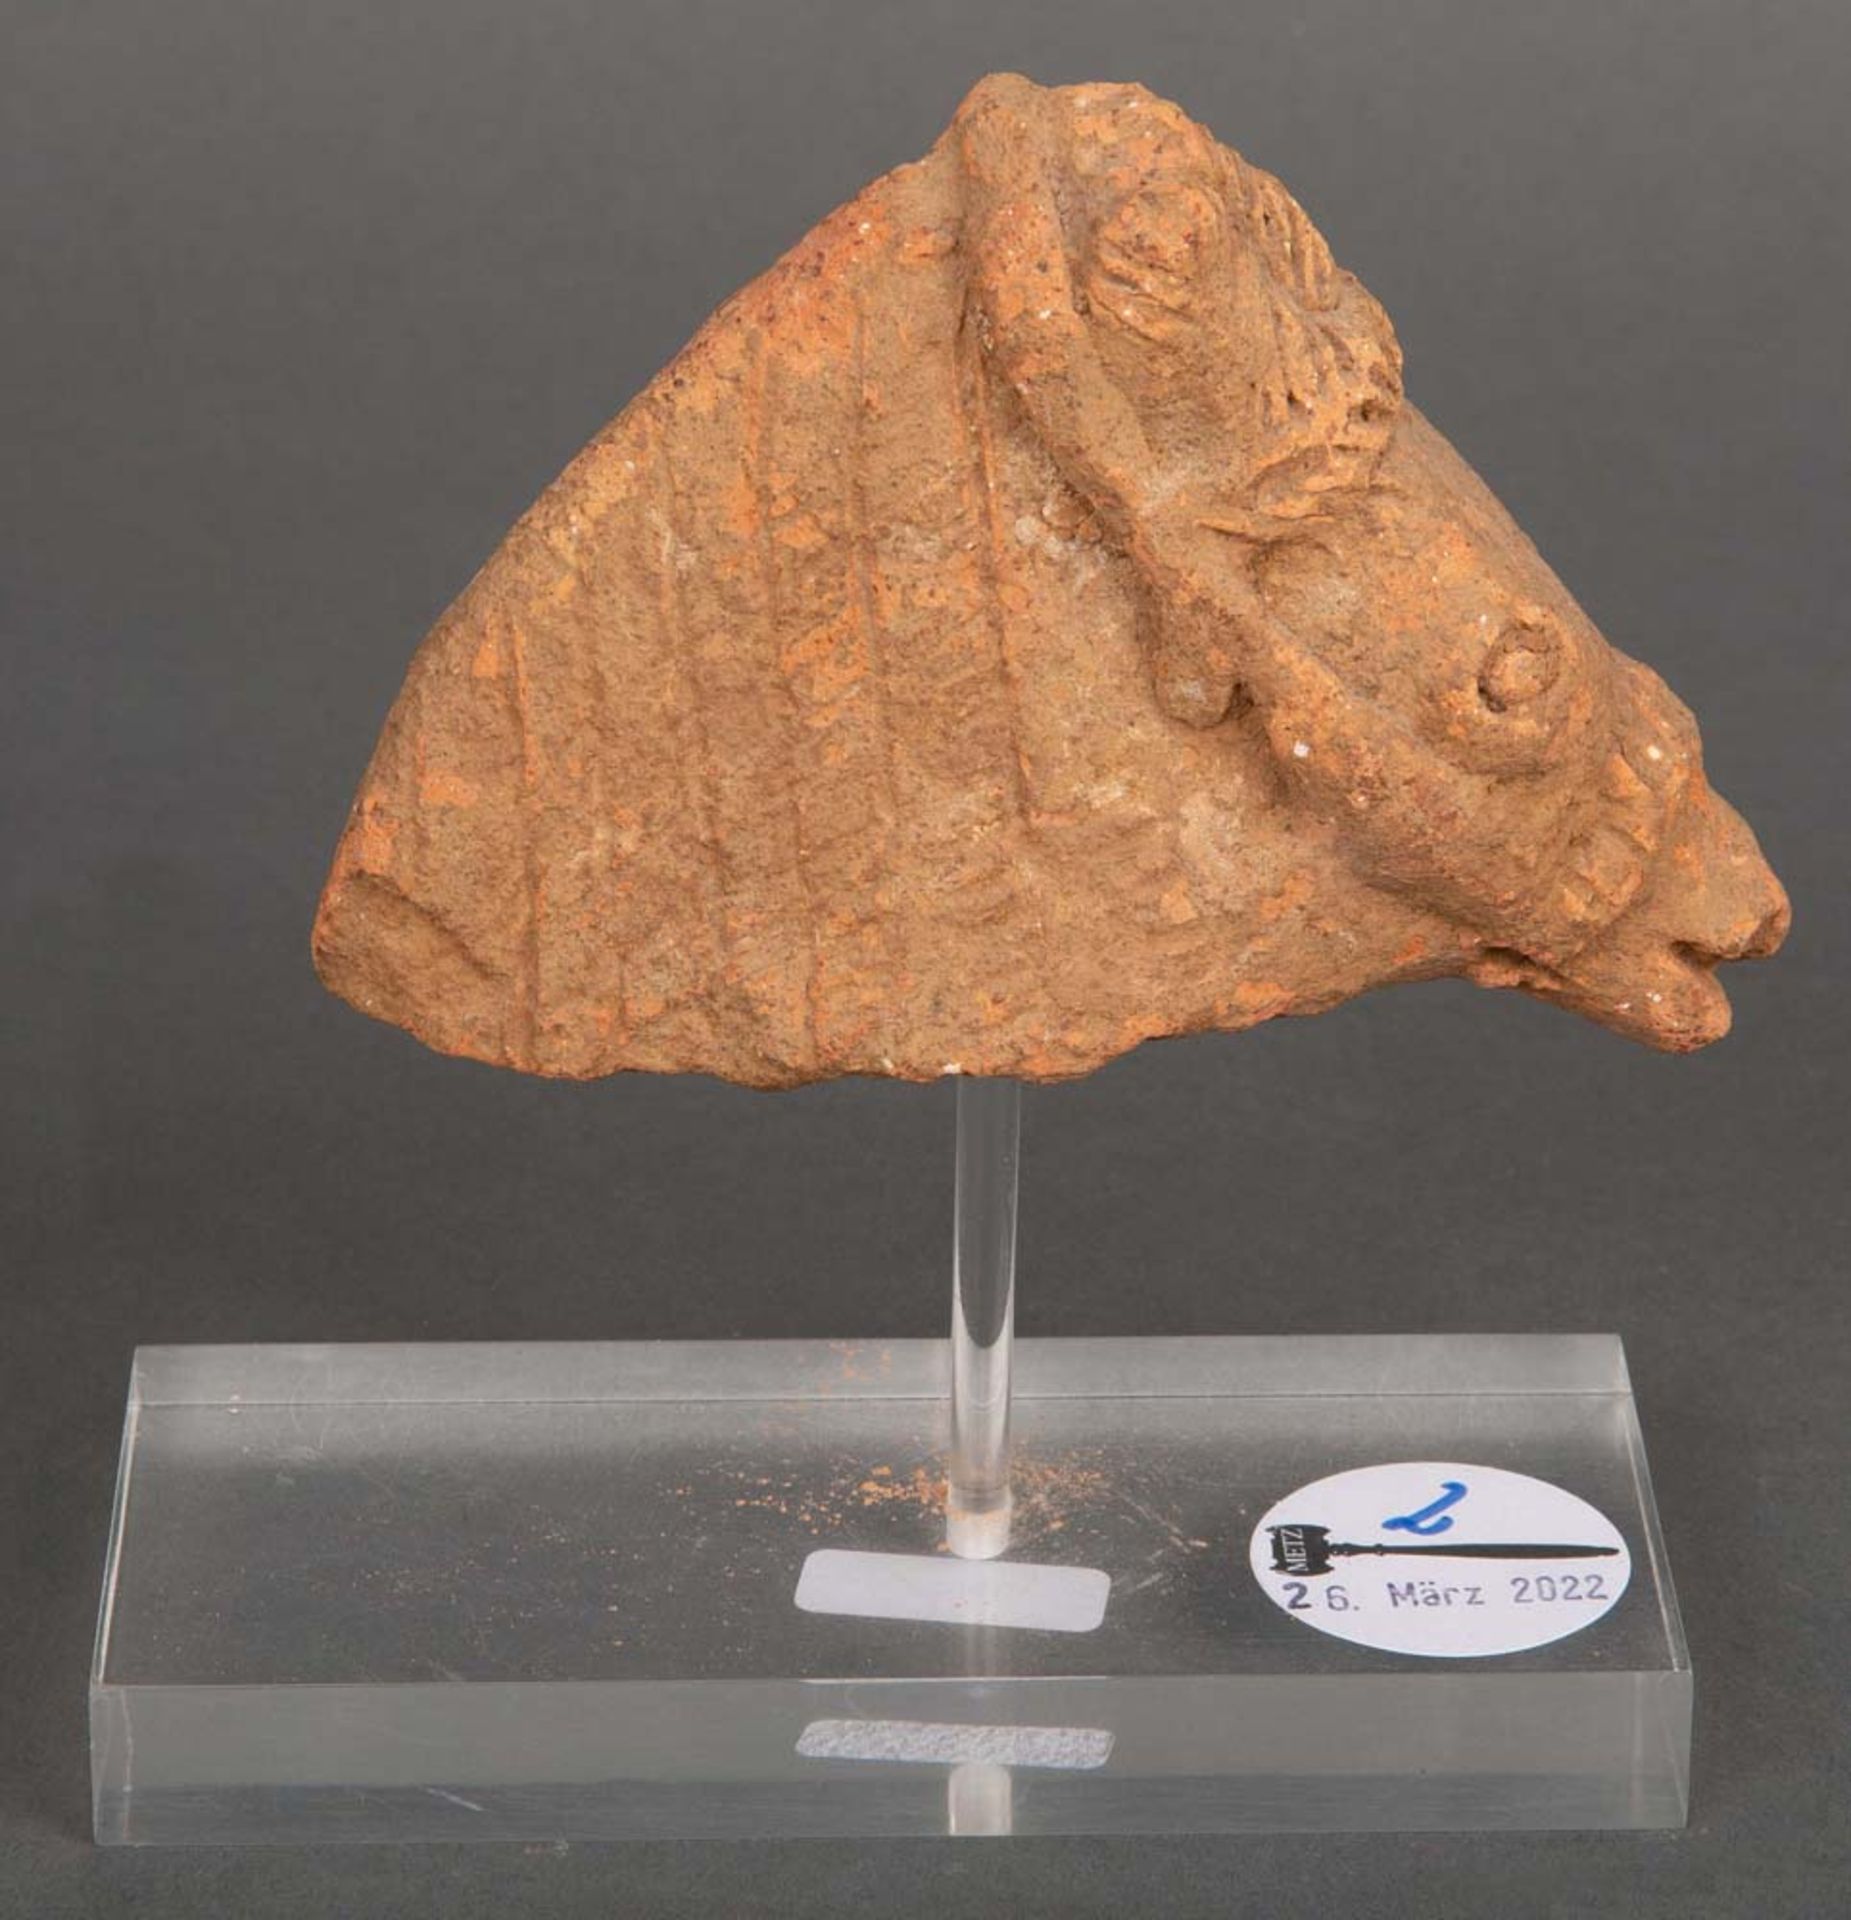 Fragment eines Pferdekopfes. Lt. Rechnung Römisch 2. Jh. n. Chr. Ton gebrannt, montiert auf moderner